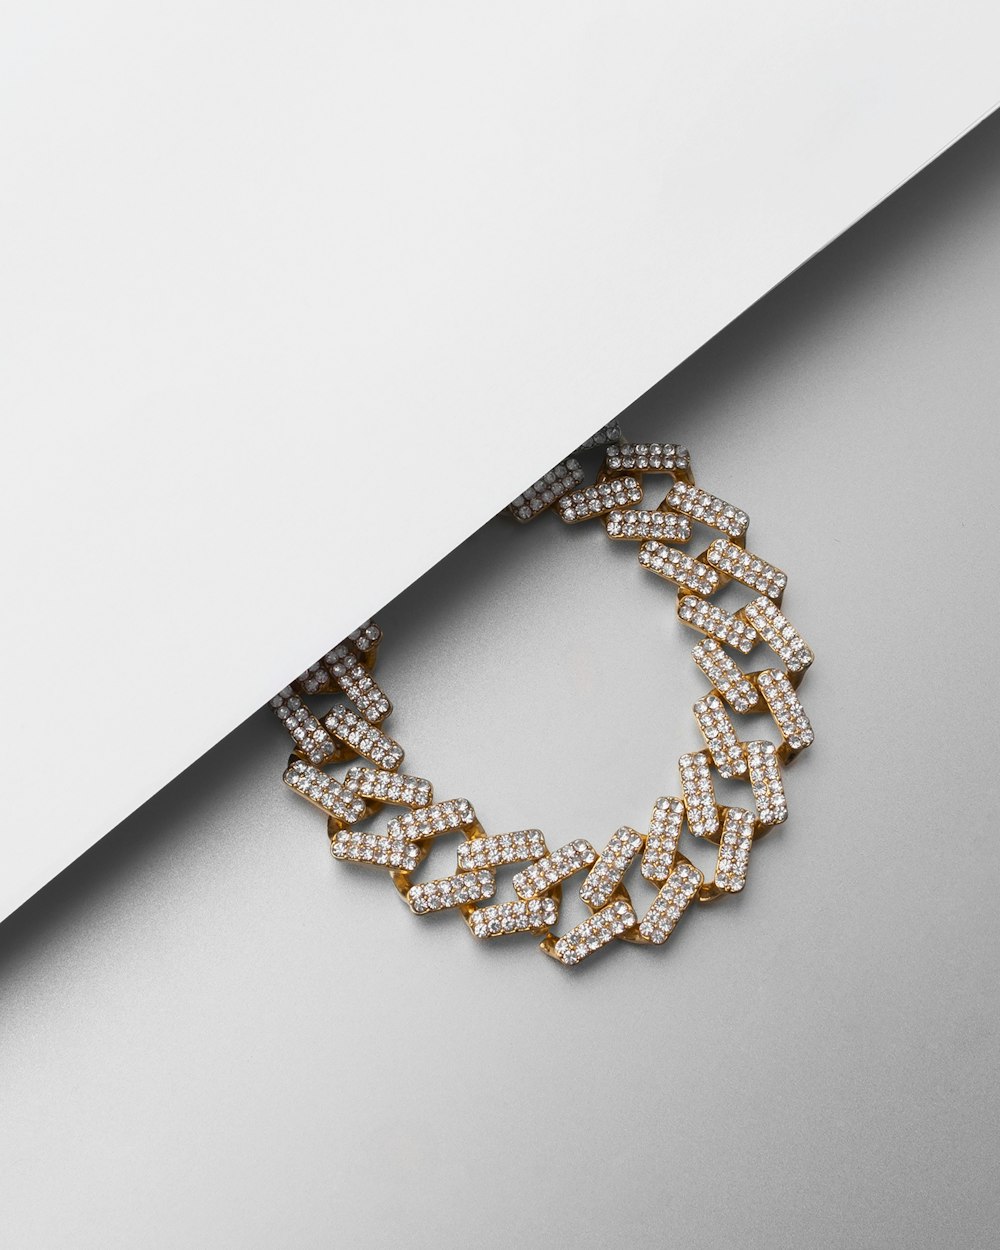 un bracelet en or et diamant sur une surface blanche